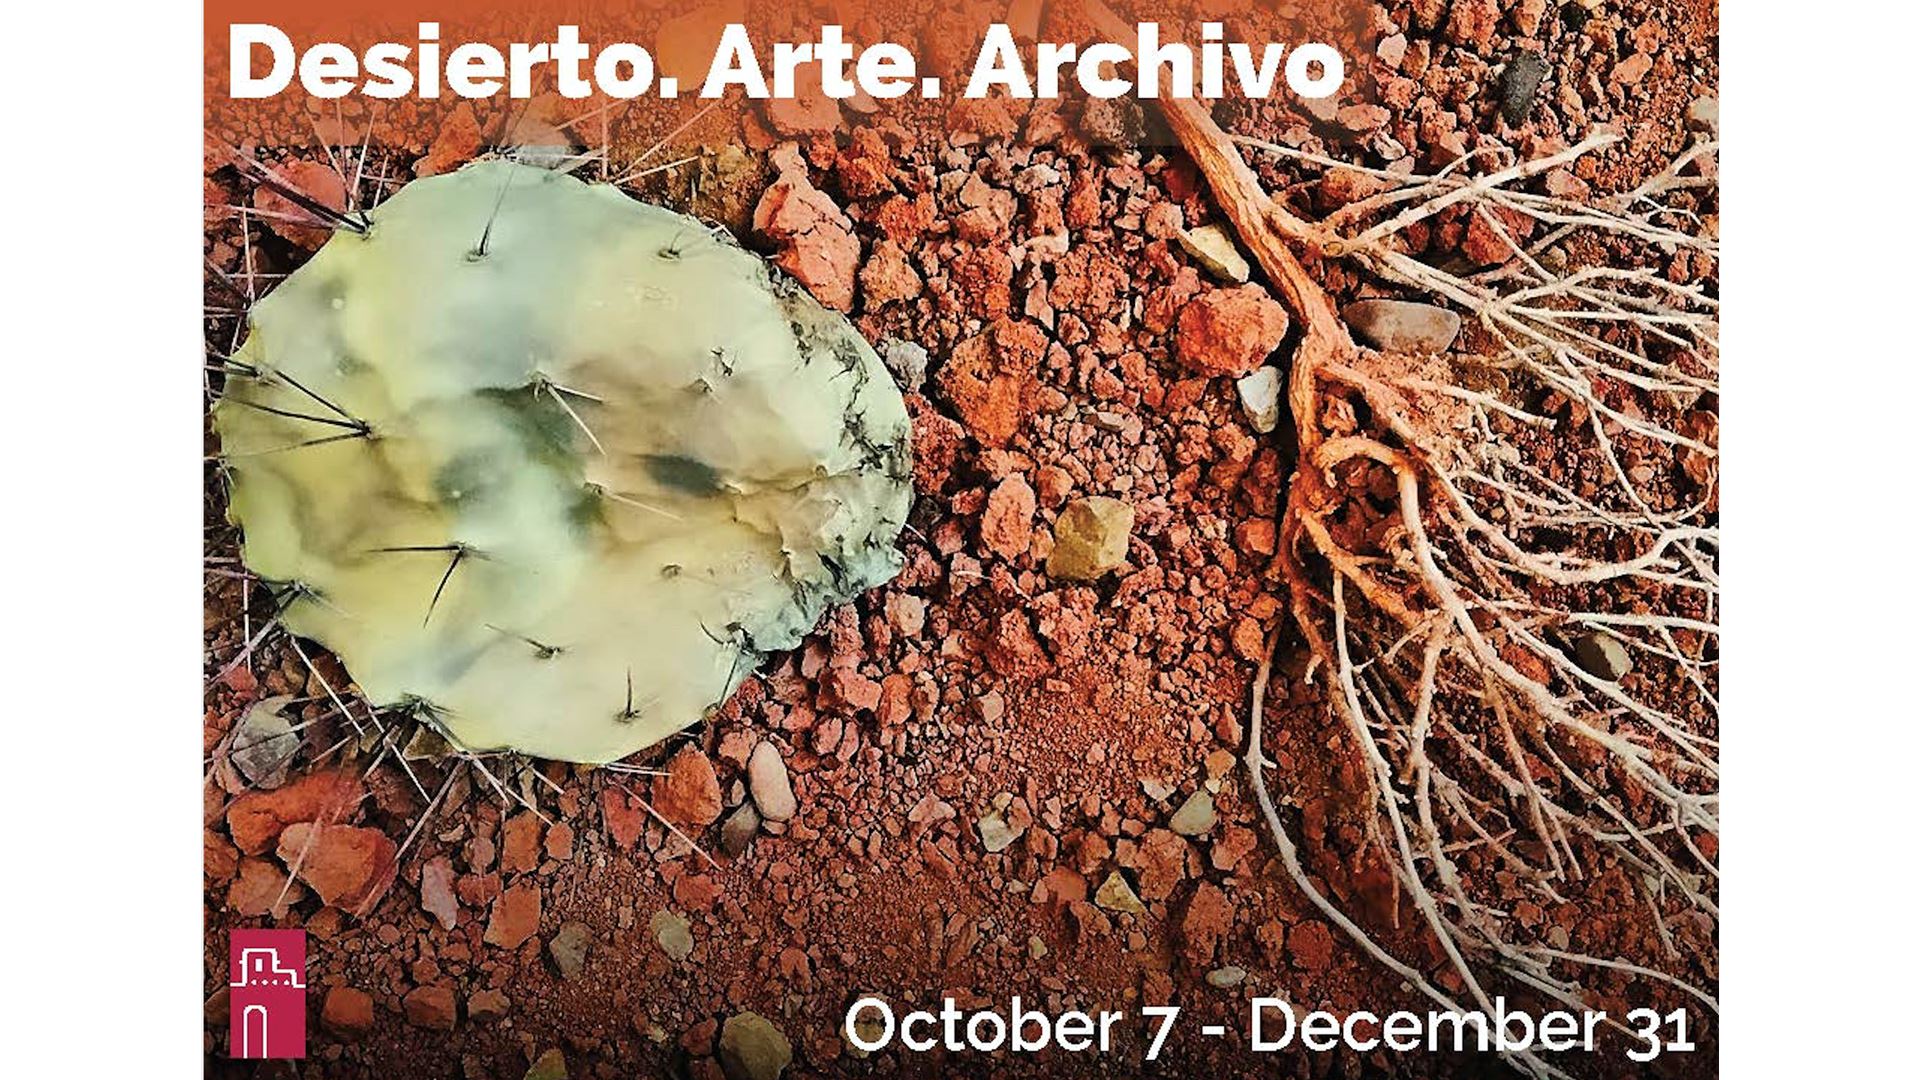 "Desierto. Arte. Archivo." exhibition Oct. 7-Dec. 31